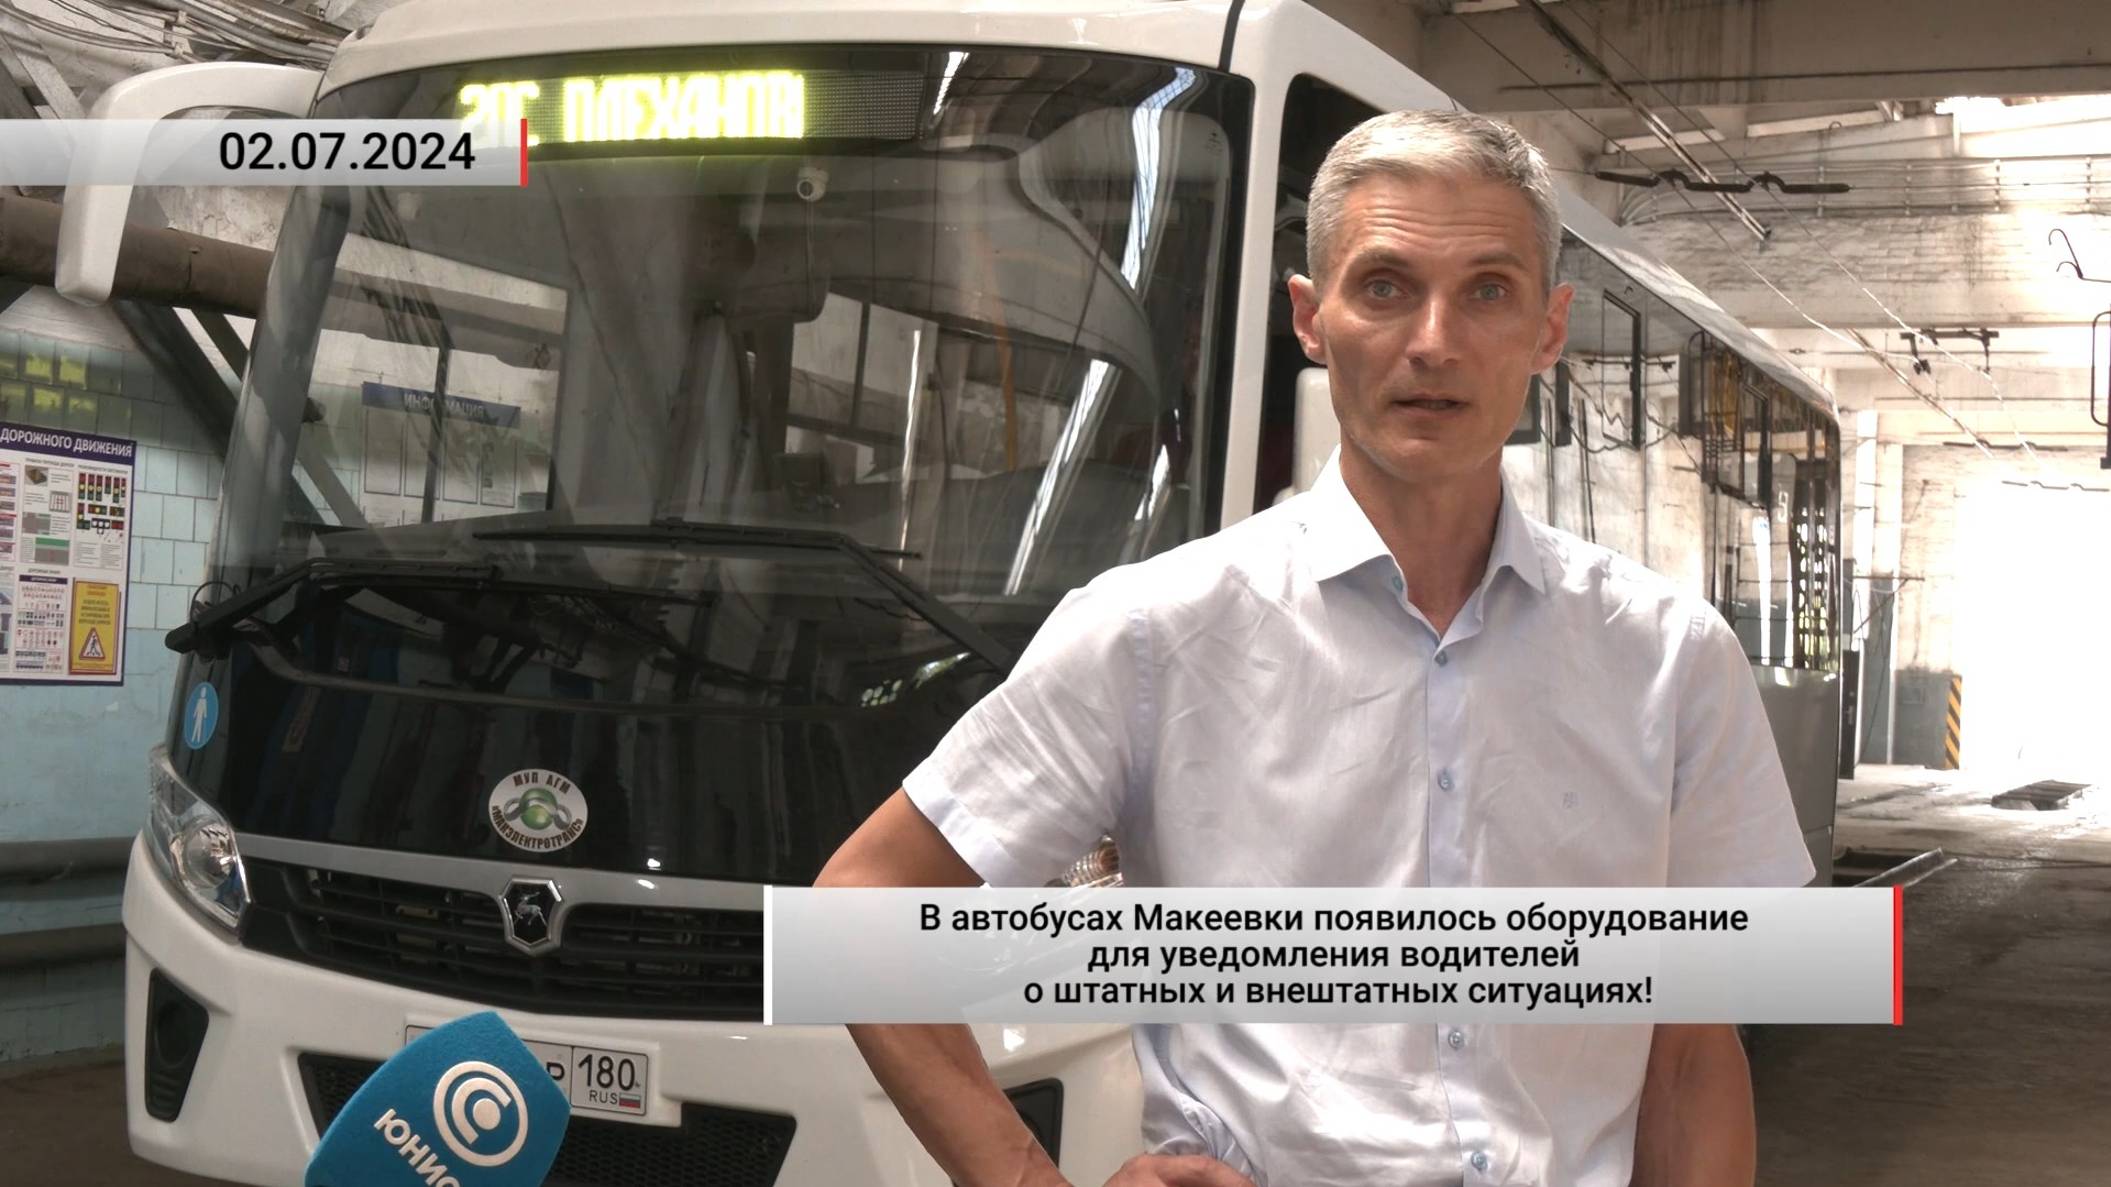 В автобусах Макеевки появилось оборудование для уведомления водителей! Актуально. 02.07.2024